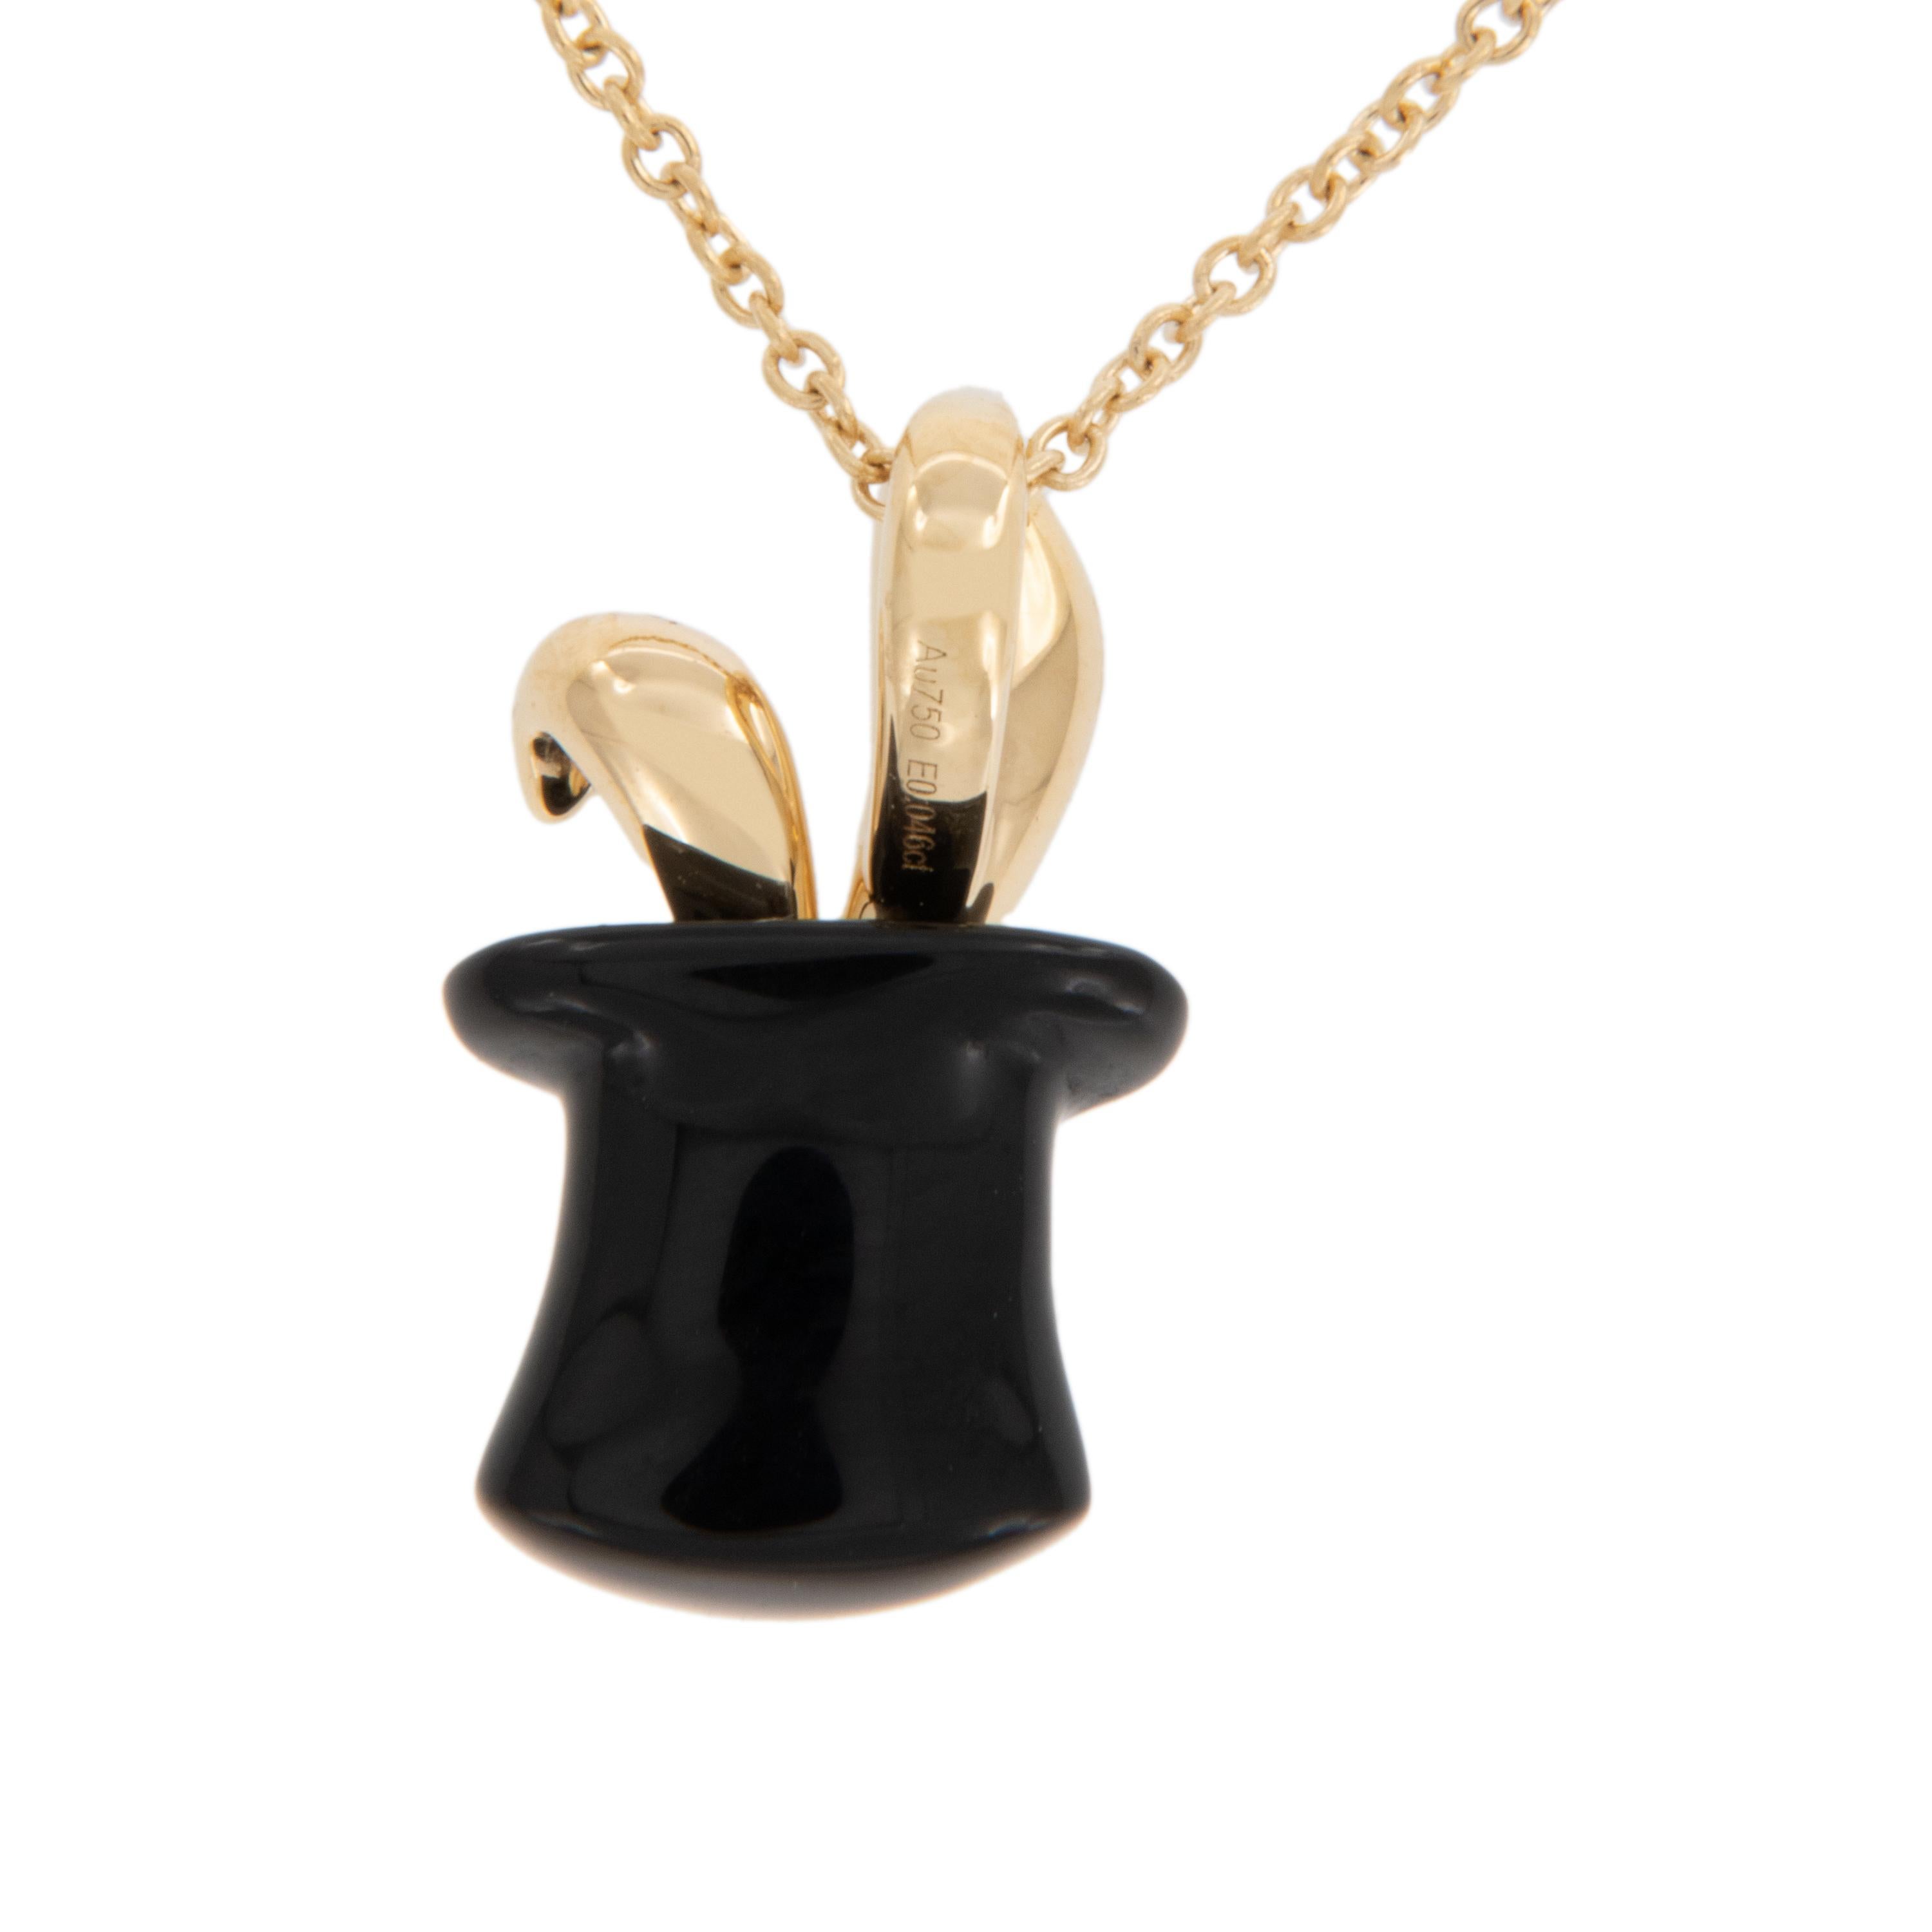 Ce collier est absolument magique ! Pas d'artifice ici - ce collier en forme de lapin dans un chapeau magique est adorable sur votre cou. Fabriqué en or jaune 18 carats avec de l'onyx noir de 1,90 carat, ce chapeau magique aux oreilles de lapin est